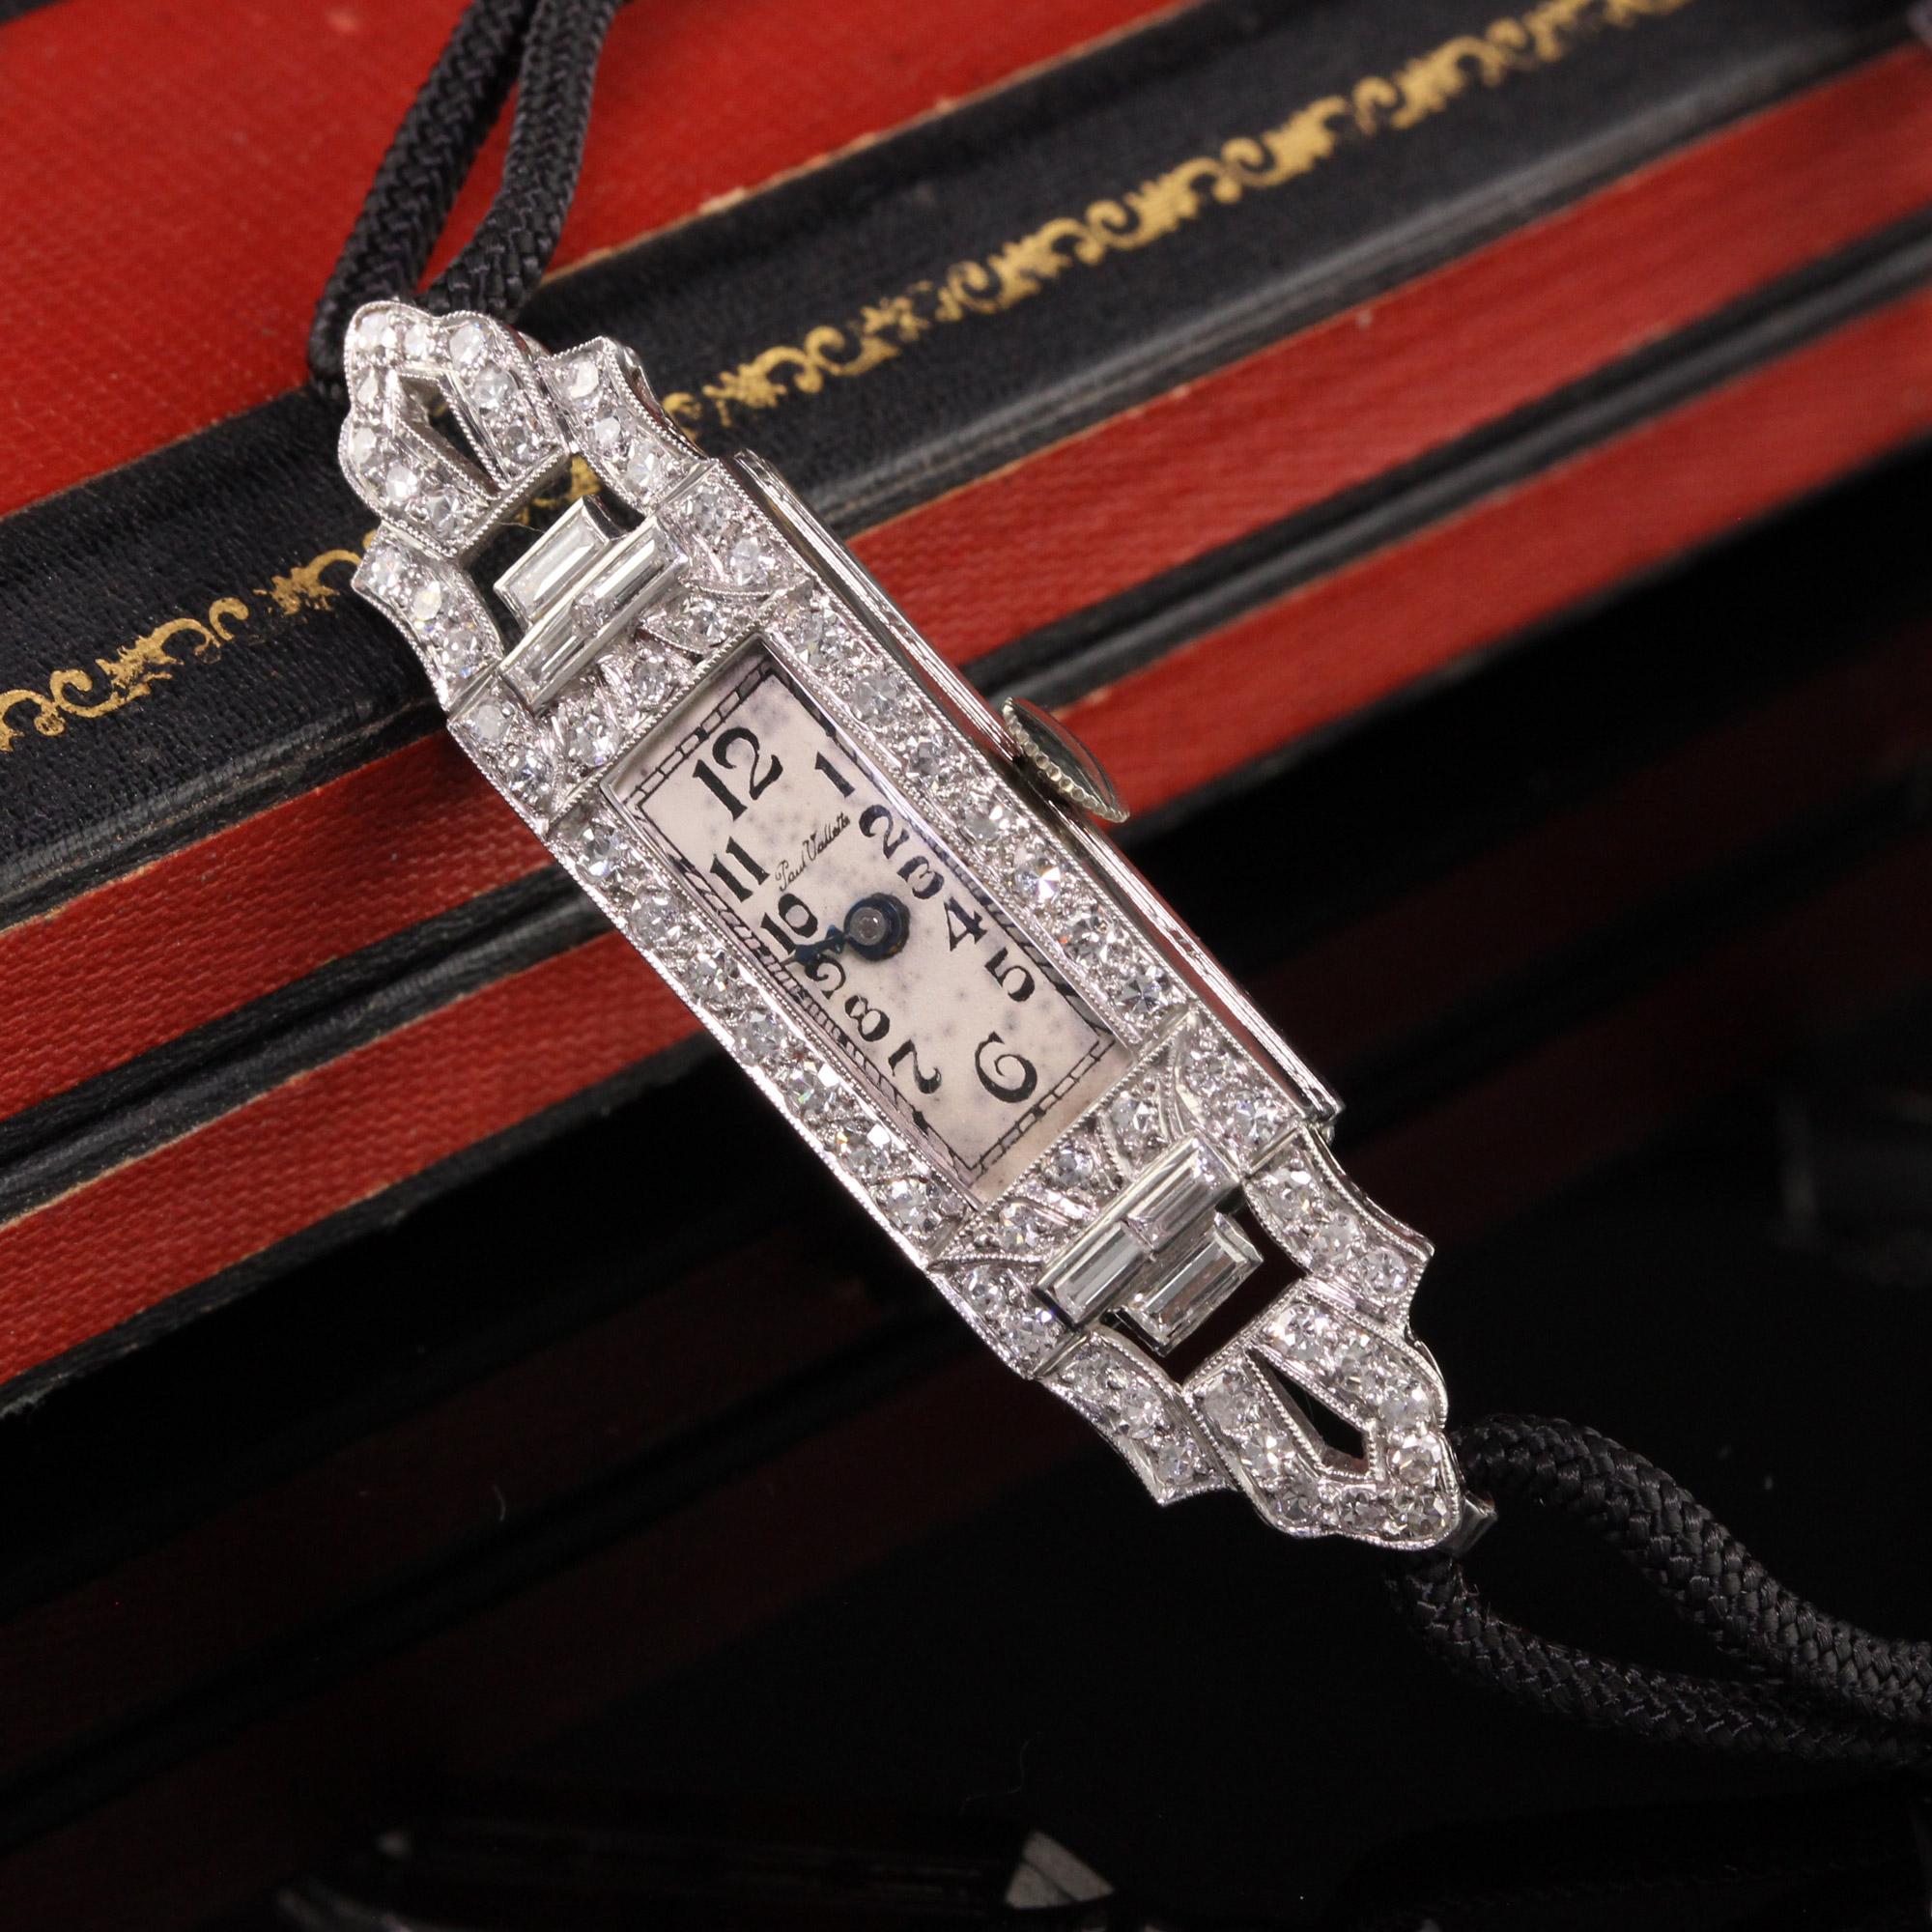 Magnifique montre du soir Art Déco Paul Vallette à diamants baguettes. Cette belle montre est dans un état étonnant et fonctionne. Le bracelet de la montre est un cordon avec une boucle en métal de base.

Article #W0005

Métal : Platine

Poids :